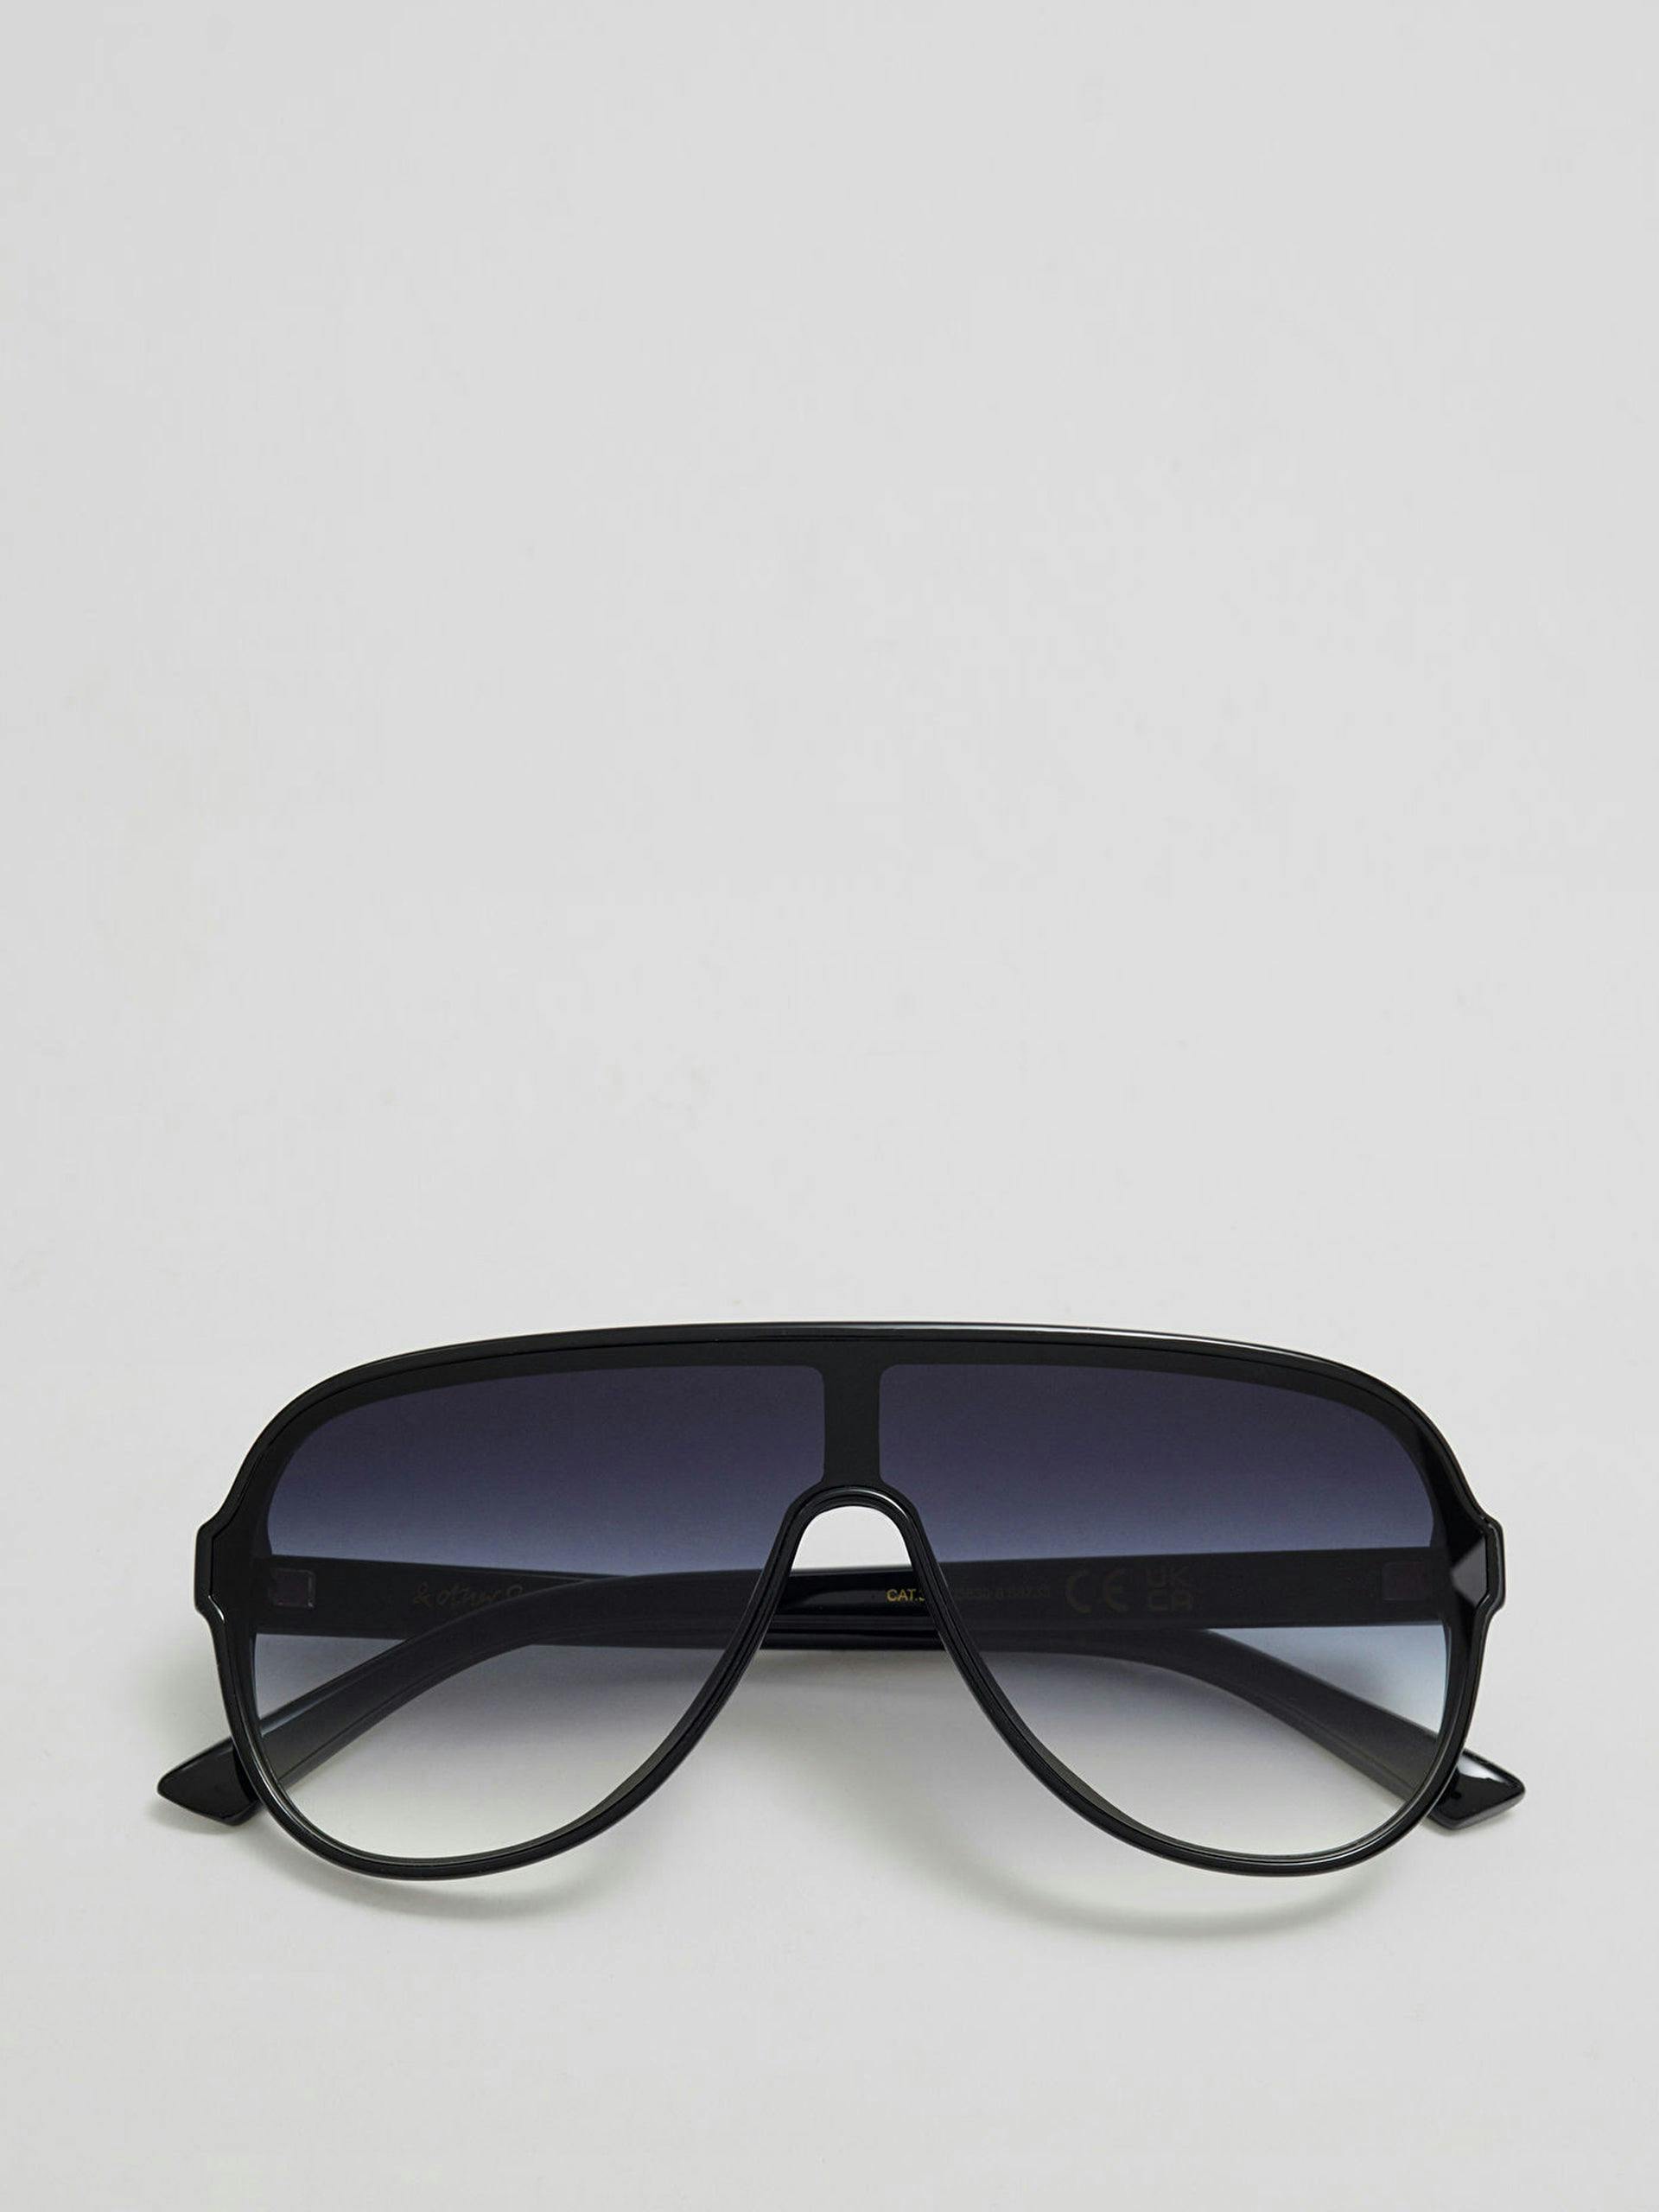 Suckerpunch Sunglasses in black